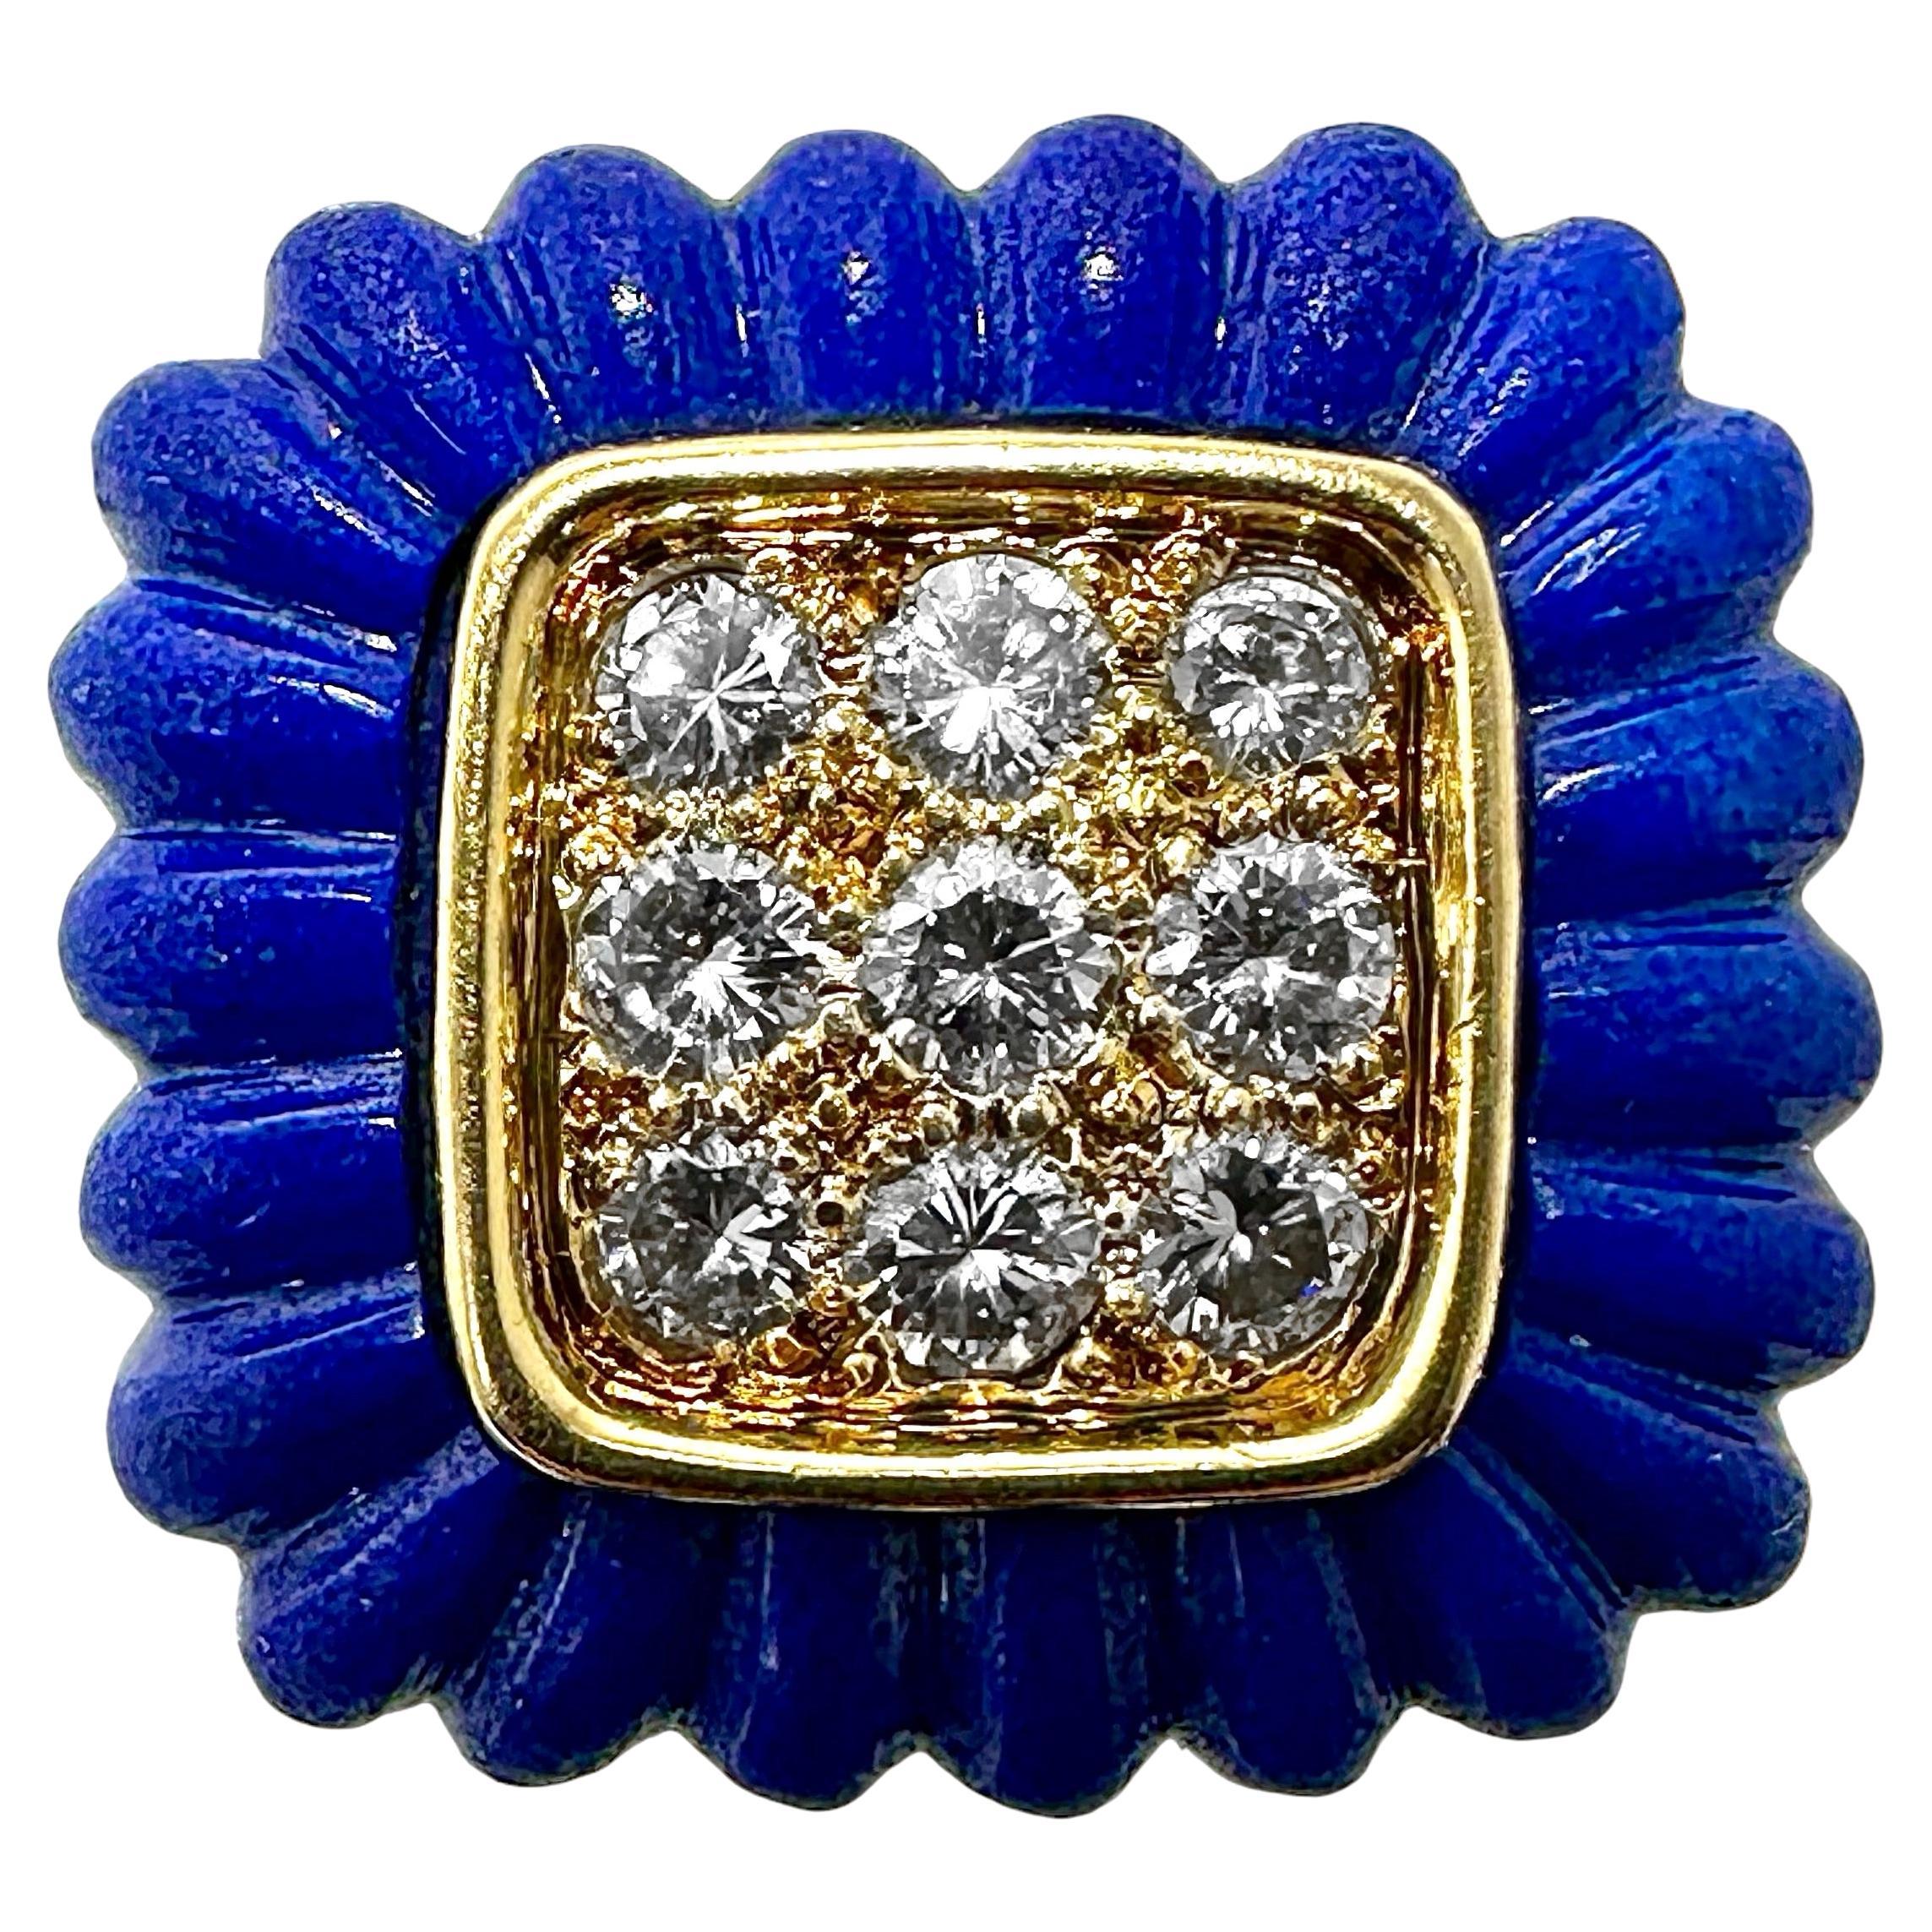 Bague de cocktail en or jaune 18 carats, diamants et lapis-lazuli bleu vif, cannelé, des années 1970